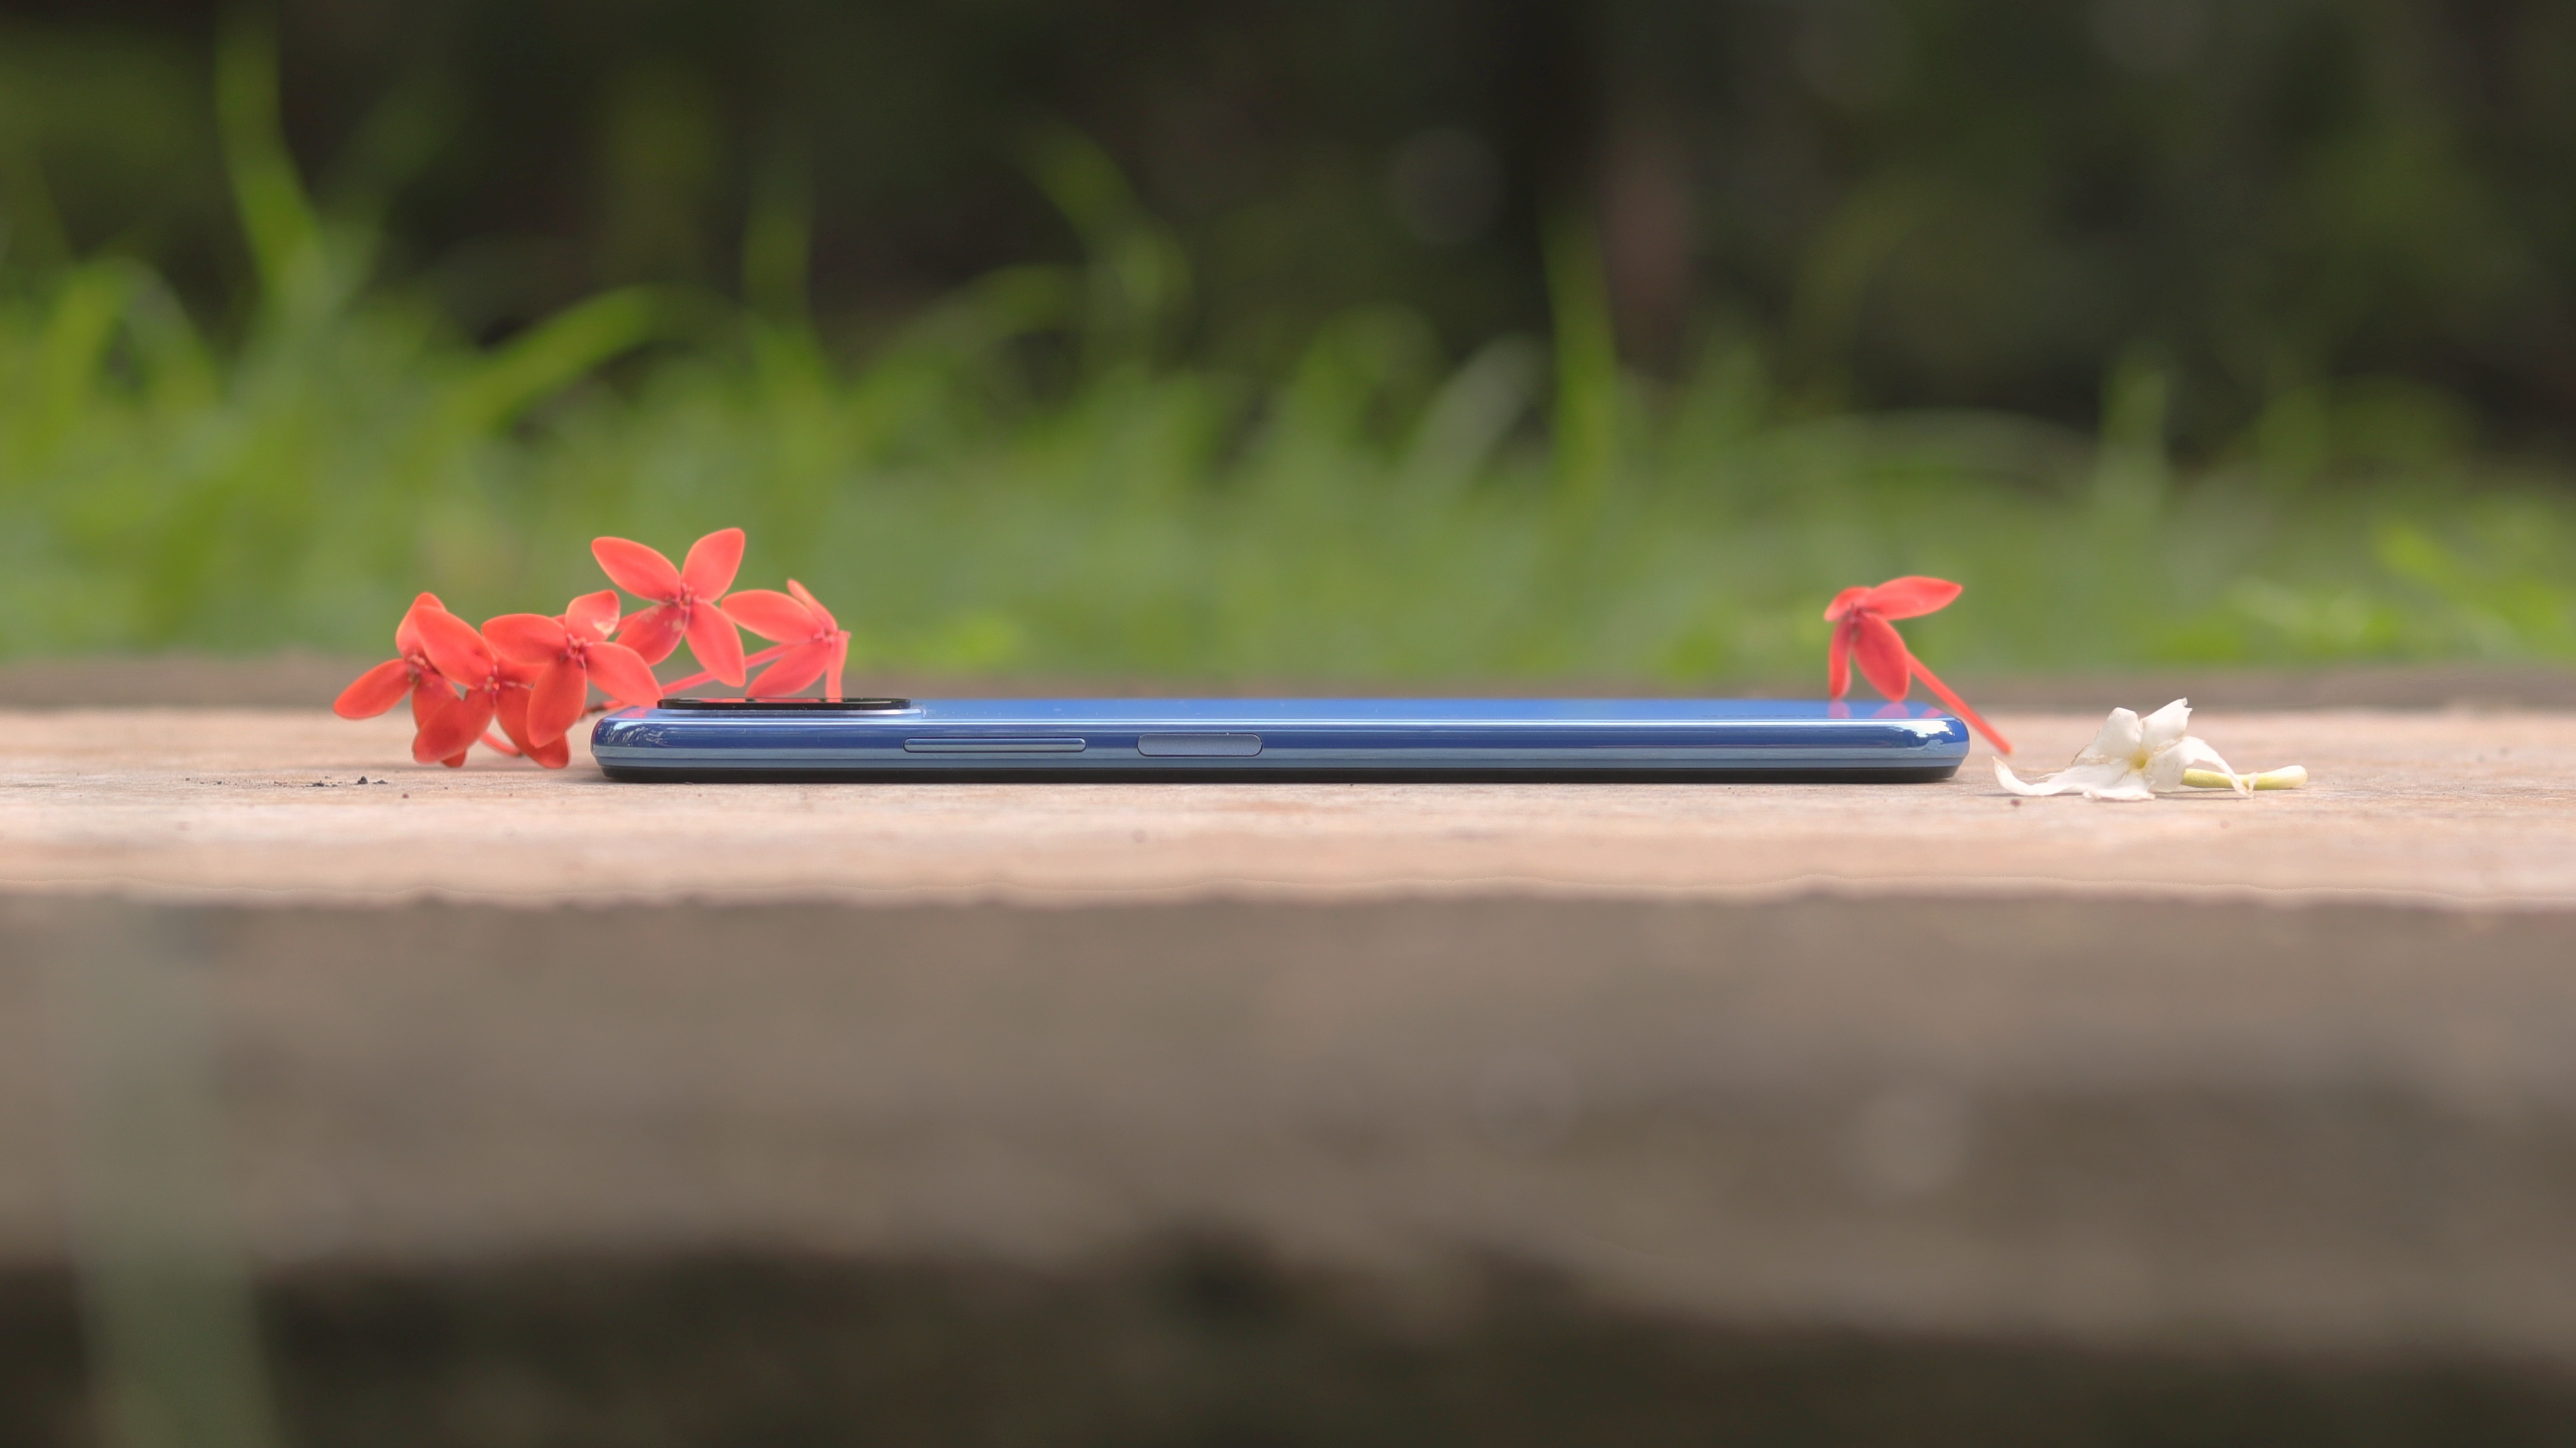 Xiaomi Mi 11 Lite review